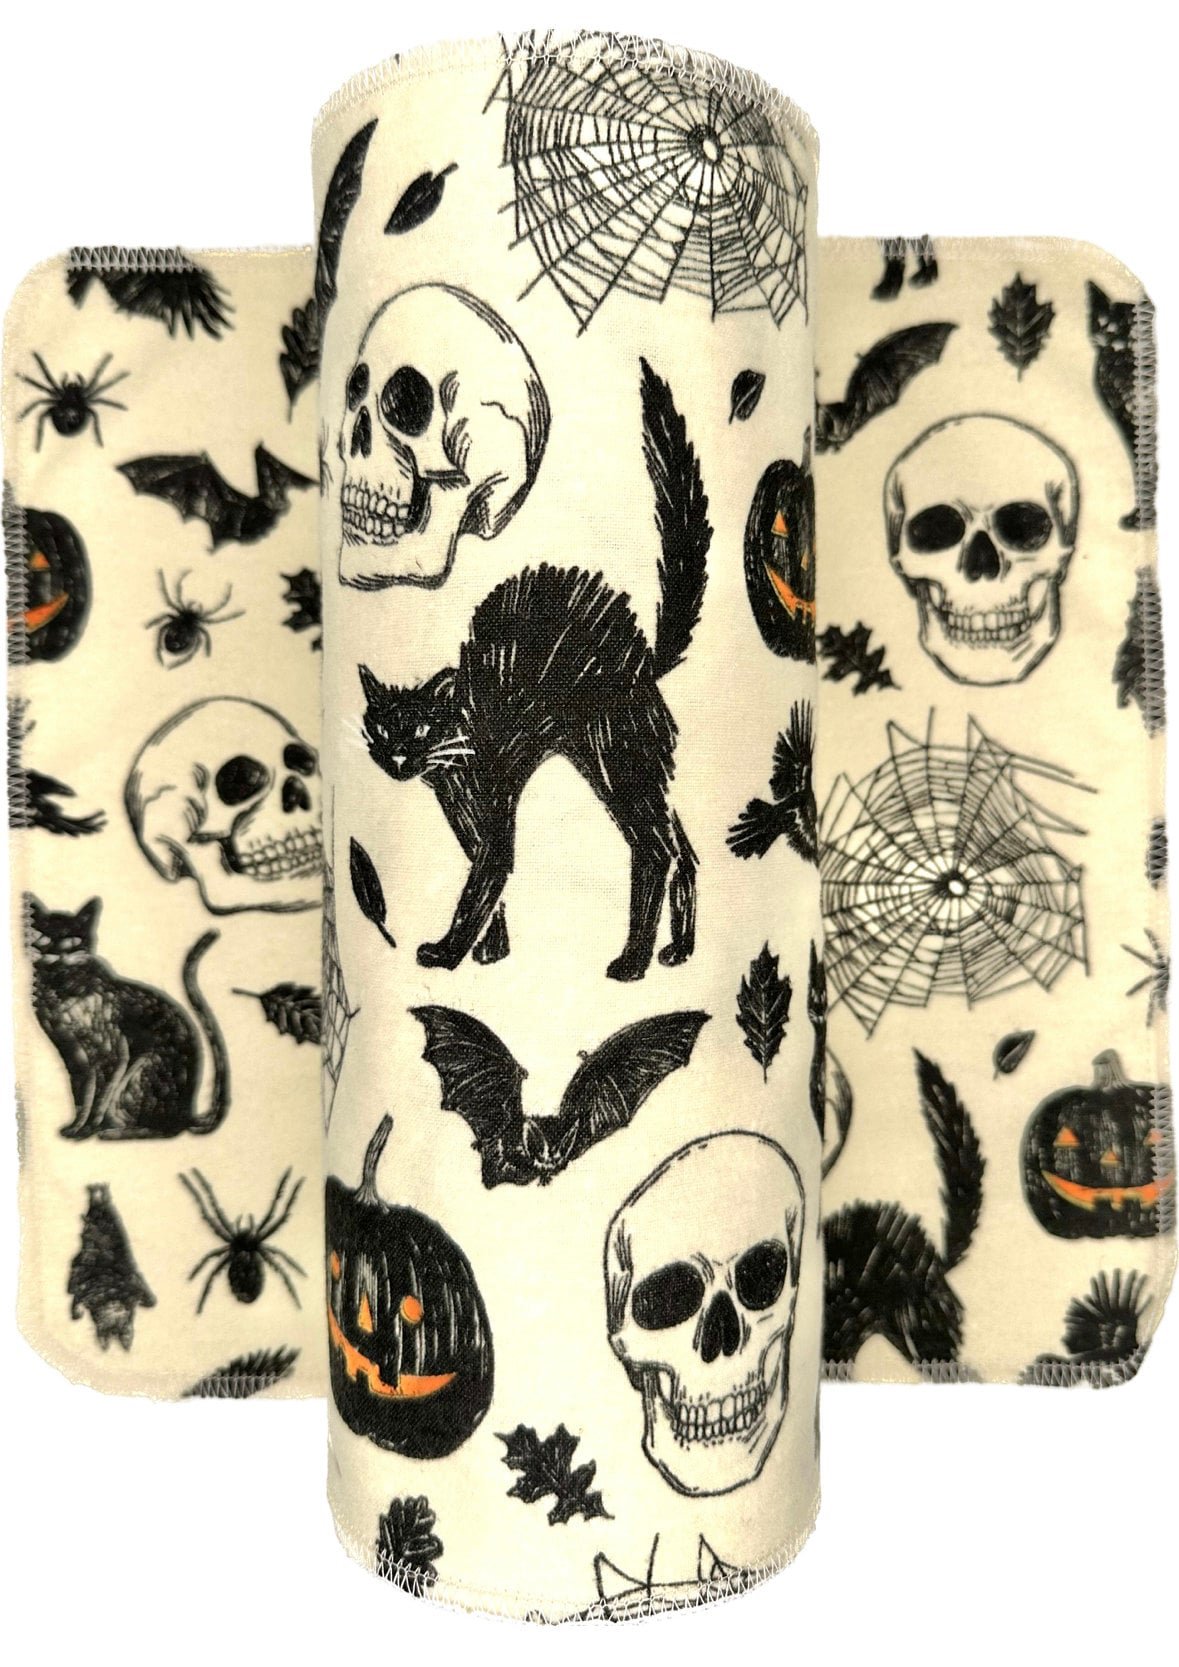 Spooky Skulls & Cats Paperless Towels || Spooky Unpaper Towels || Halloween Eco Sustainable Kitchen